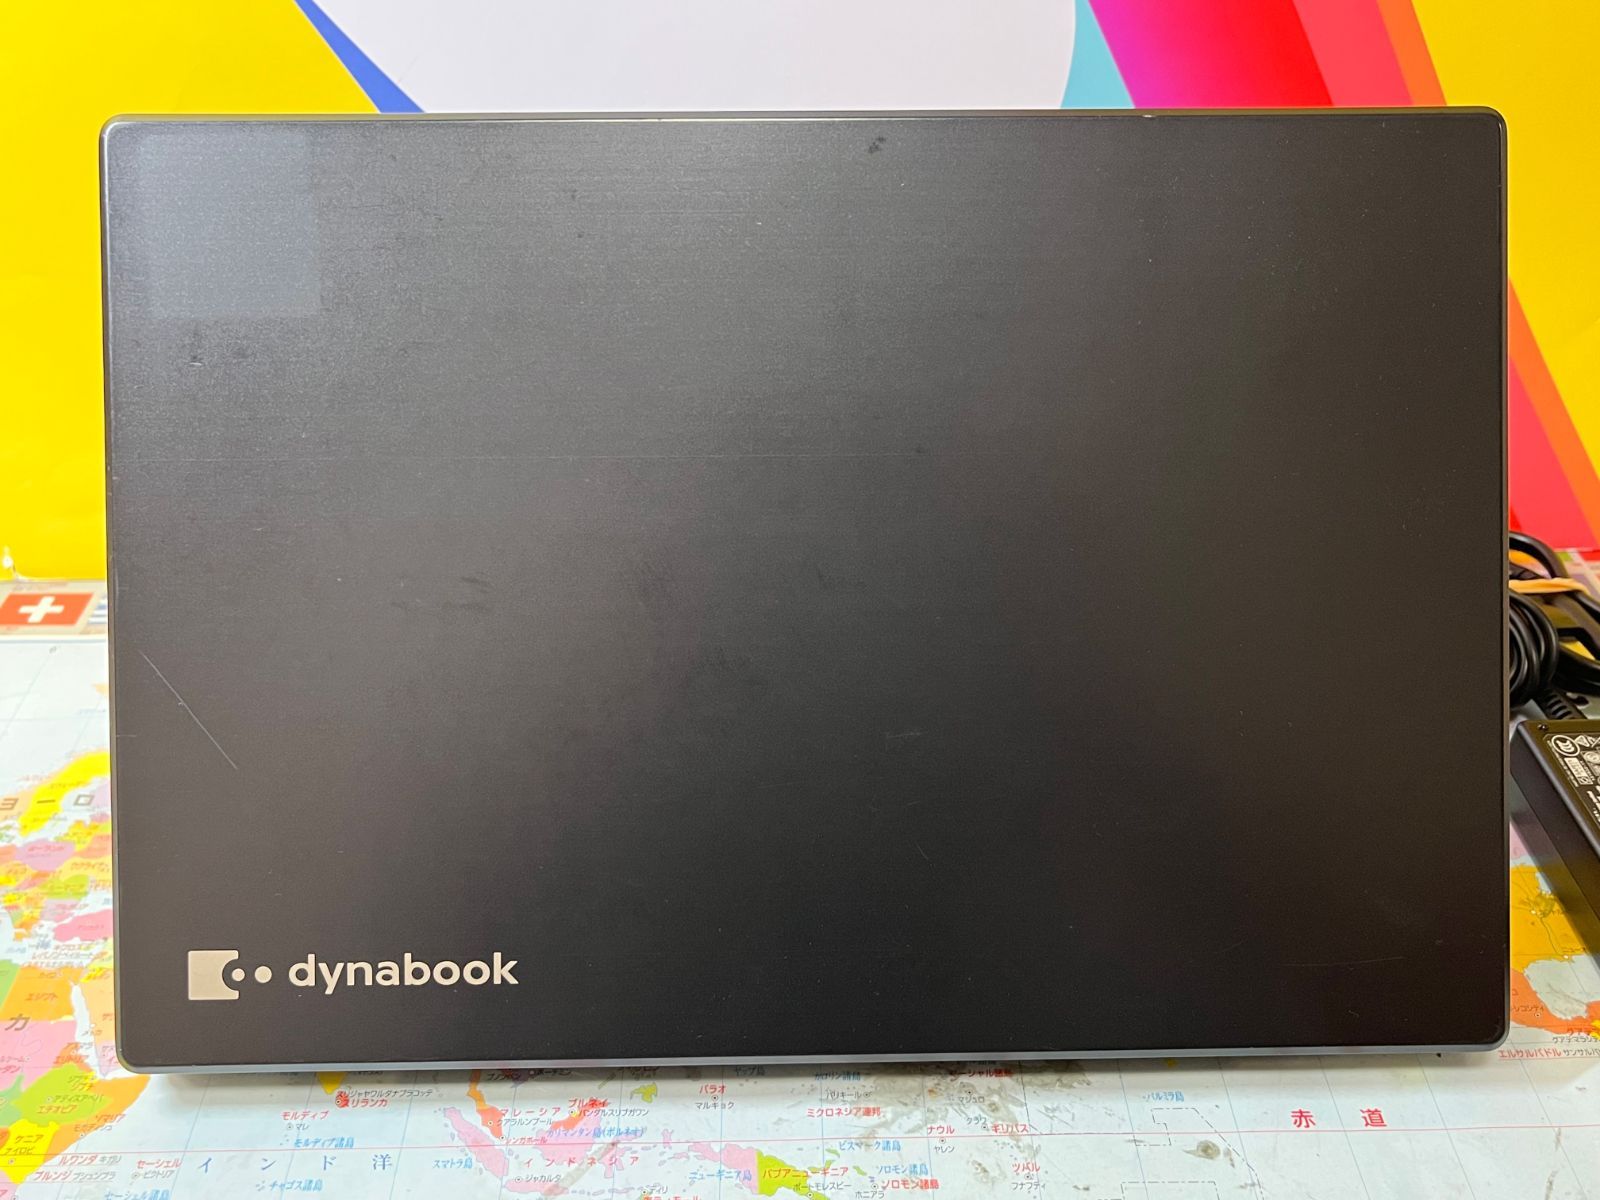 東芝 第10世代 dynabook G83/FP 高輝度 高色純度 FHD液晶